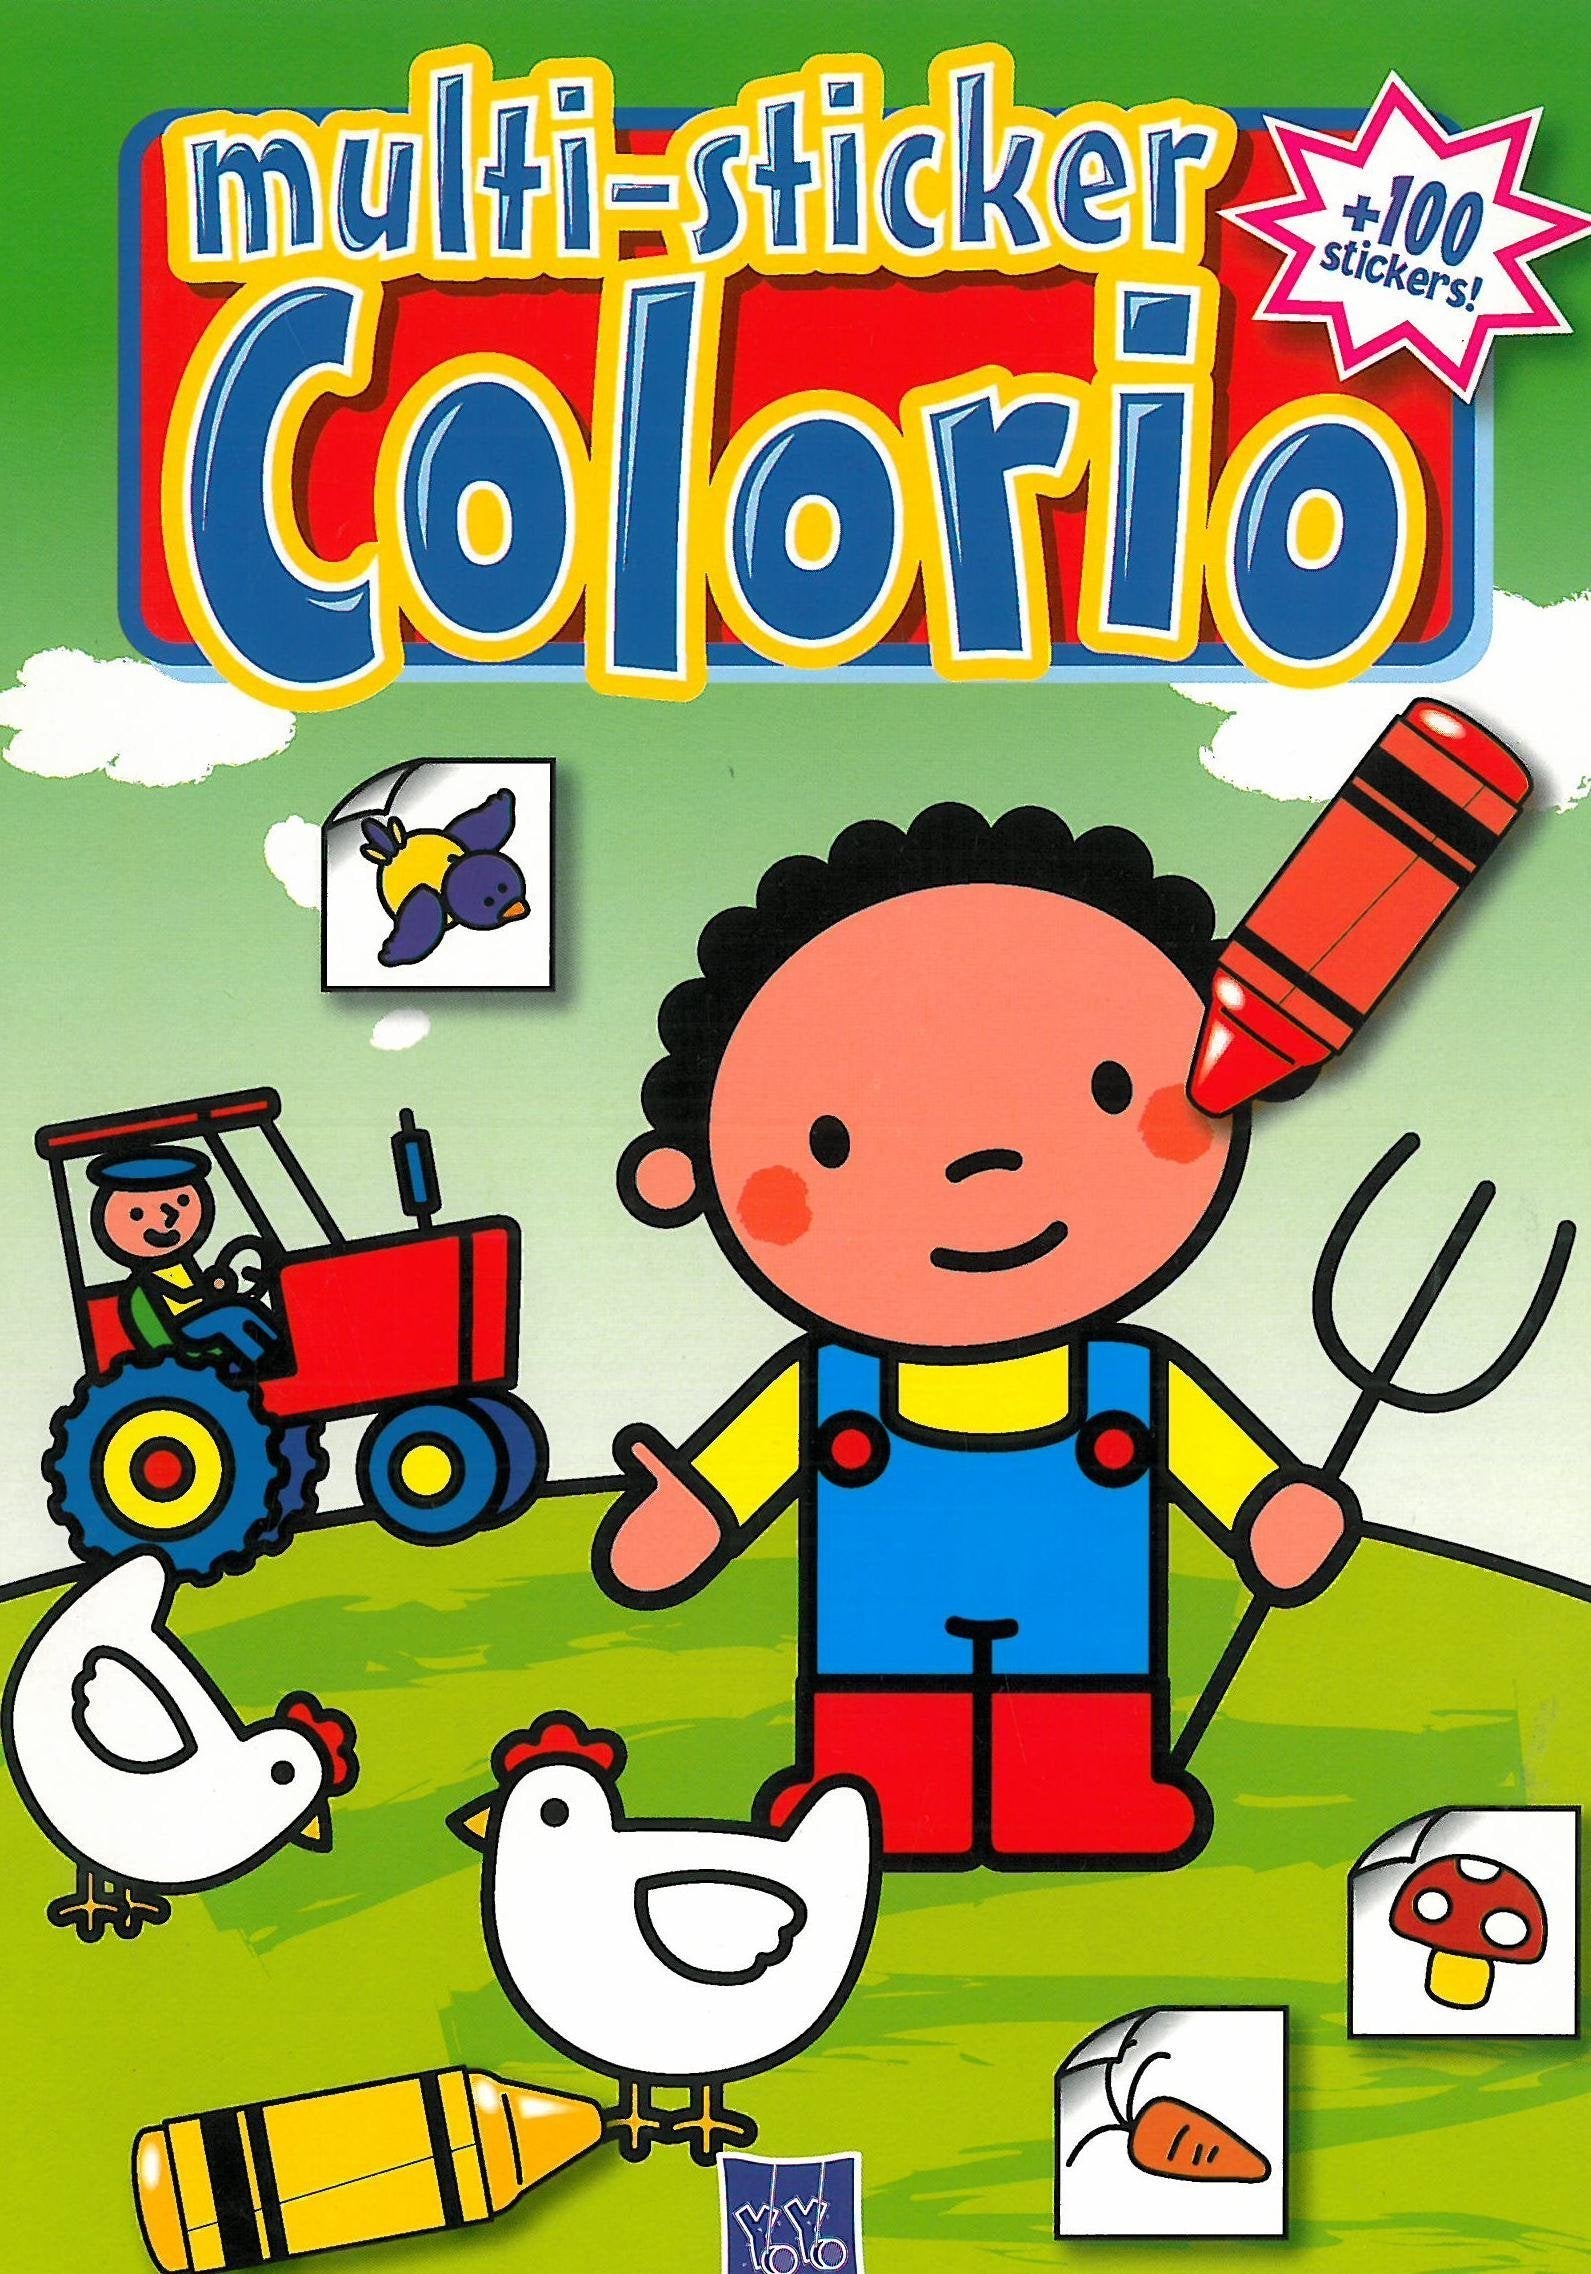 Multi-sticker Colorio - Tractor